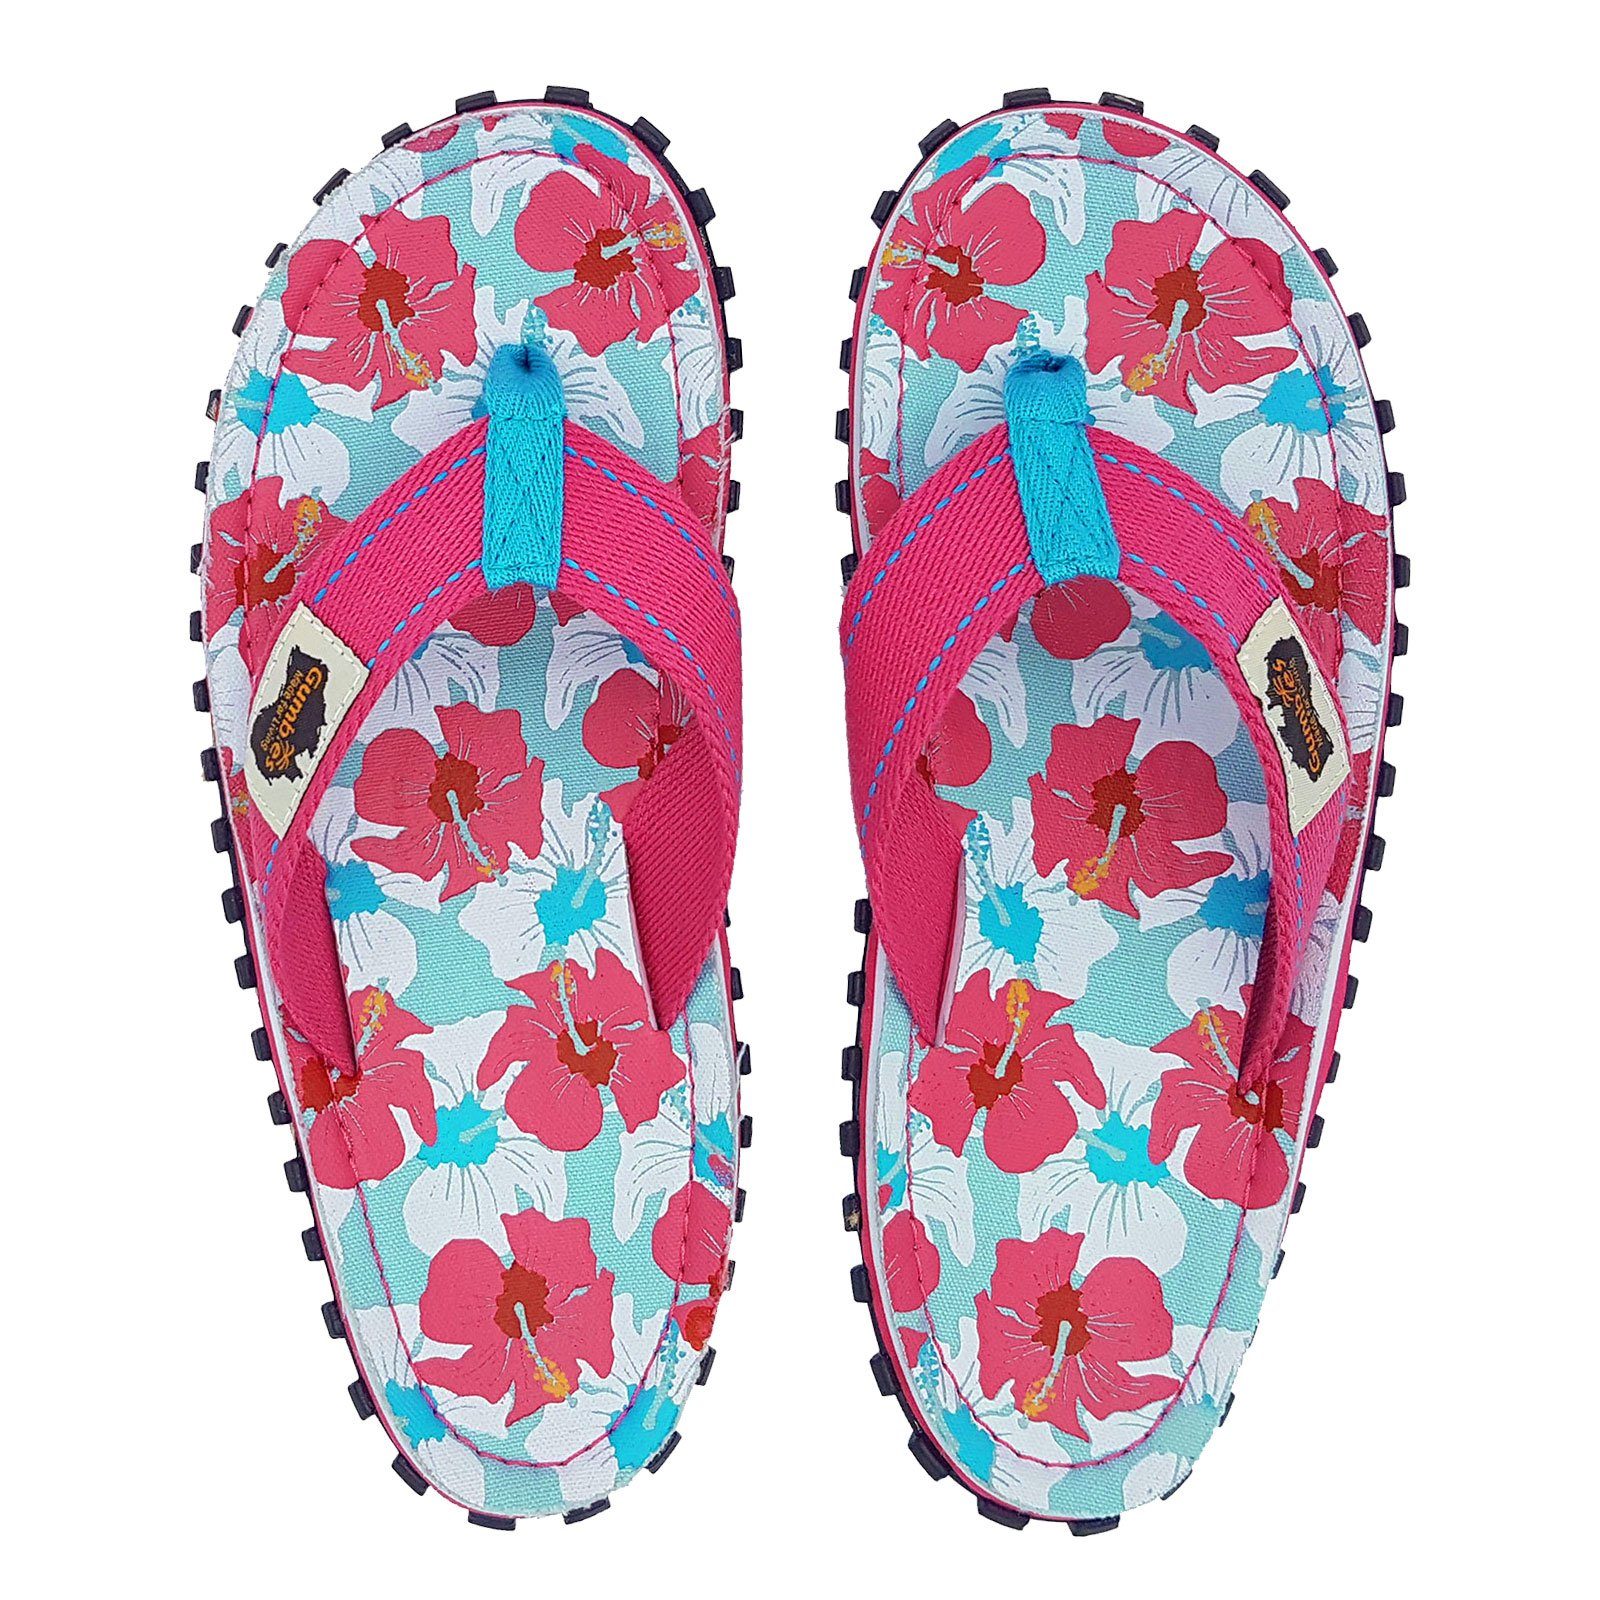 Islander geformten mixed mit Gumbies ergonomisch hibiscus 2209 Zehentrenner Fußbett